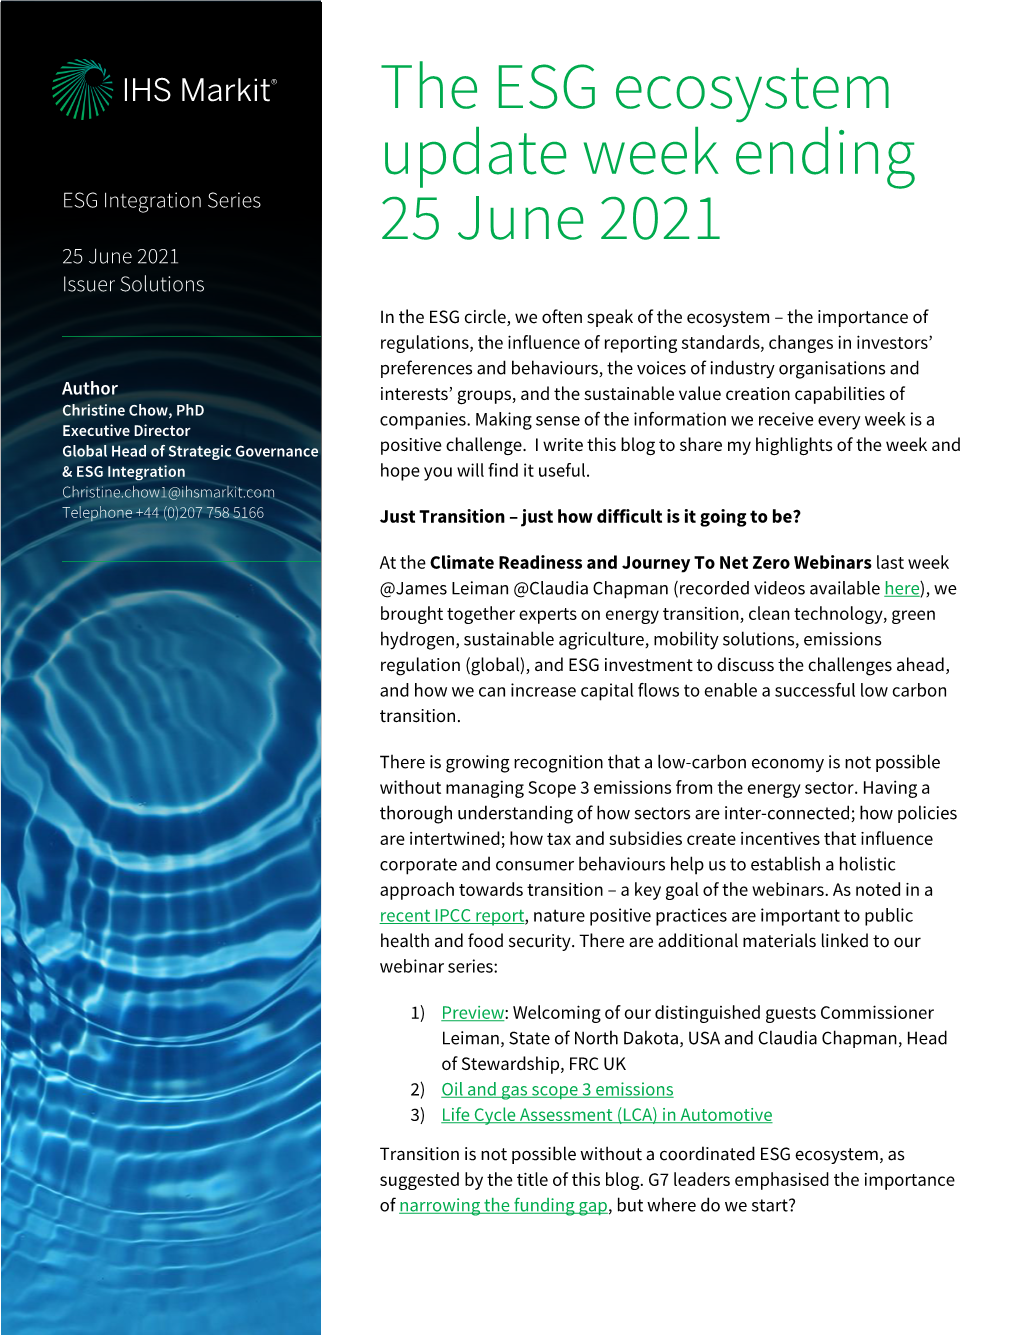 The ESG Ecosystem Update Week Ending 25 June 2021